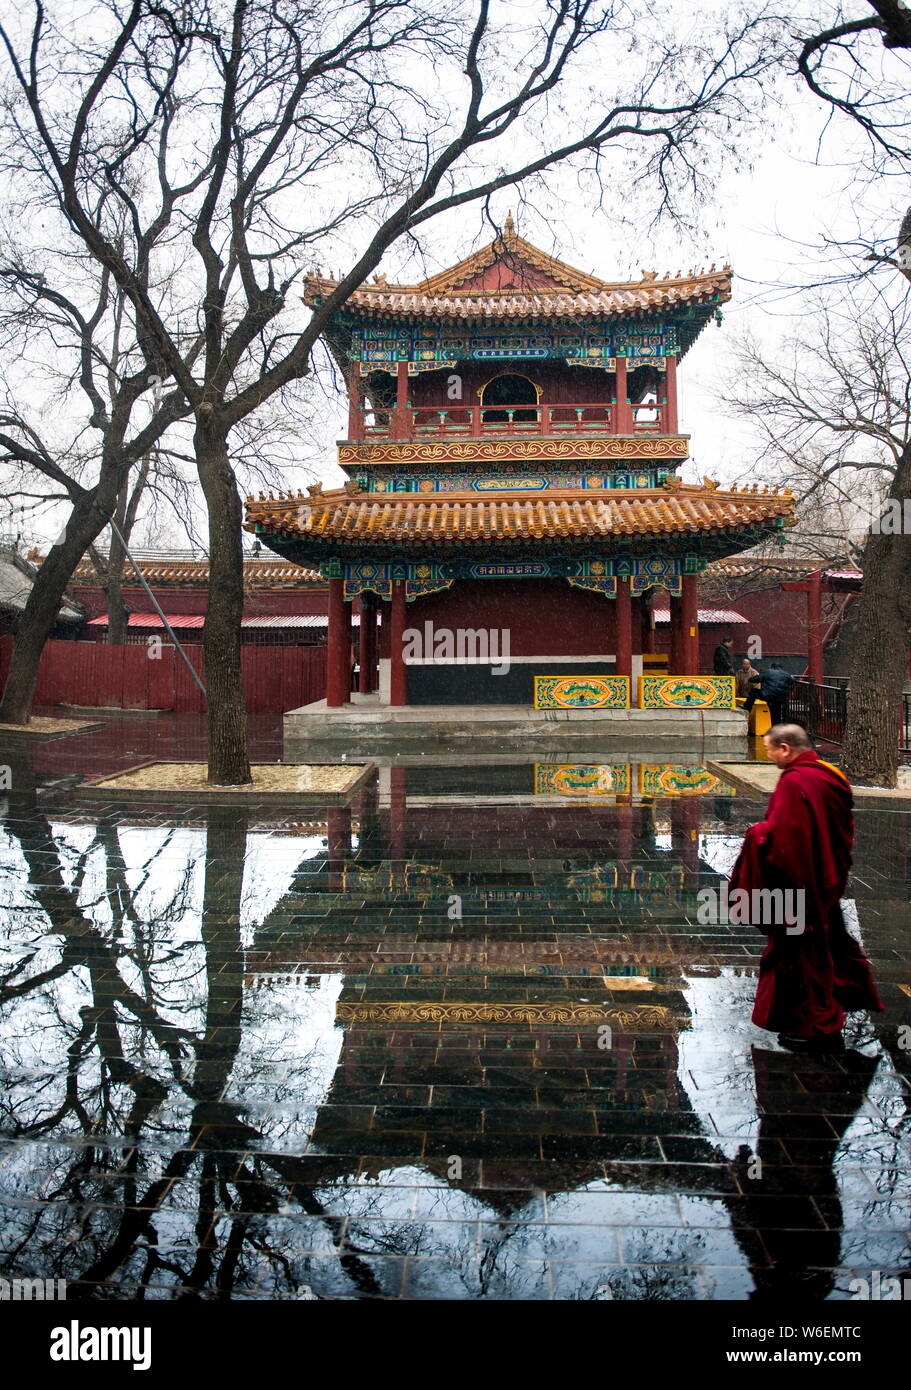 Un lama est considéré à l'Yonghe Temple, également connu sous le nom de la Lamaserie Yonghe ou Temple du Lama, durant une chute de neige à Beijing, Chine, 17 mars 2018. Banque D'Images